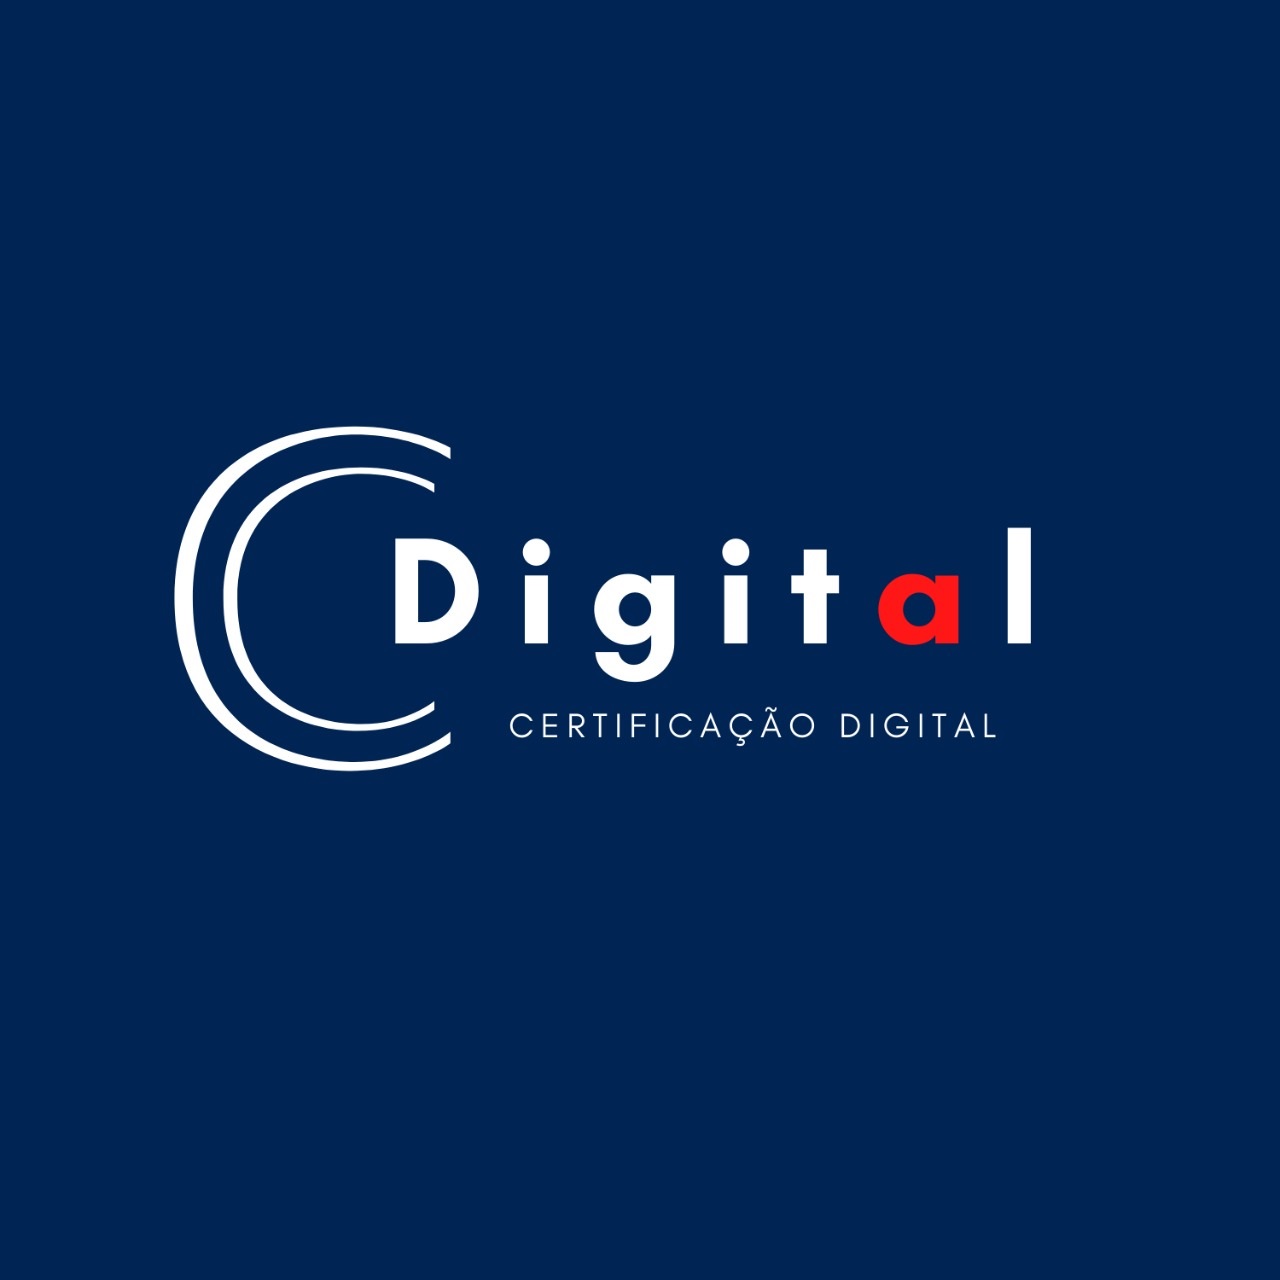 Logotipo do parceiro AR Cdigital &#8211; OAB &#8211; 5%